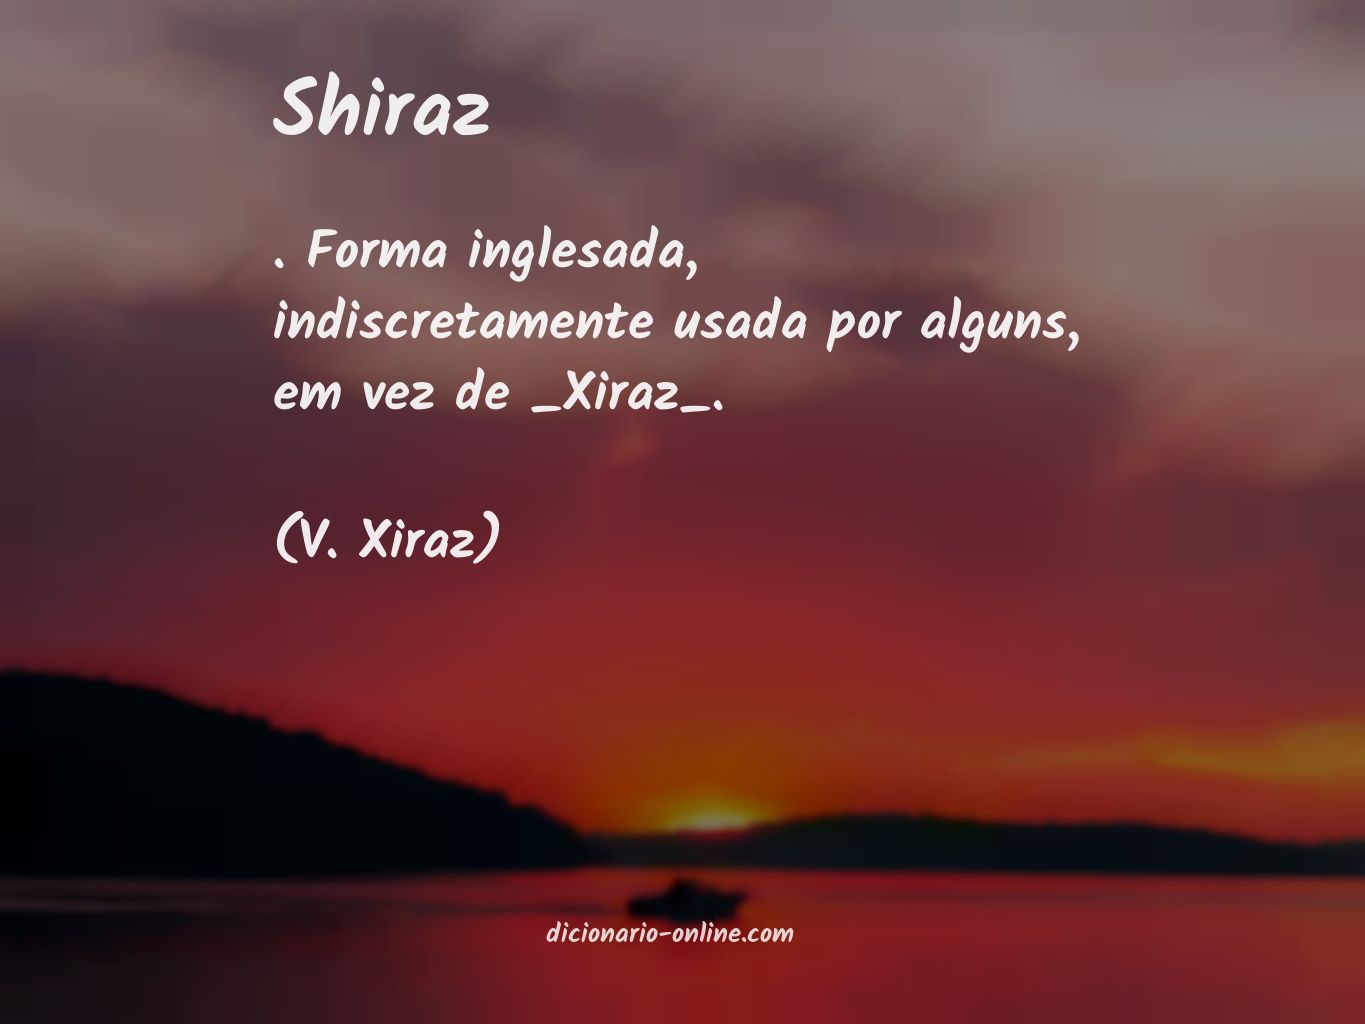 Significado de shiraz